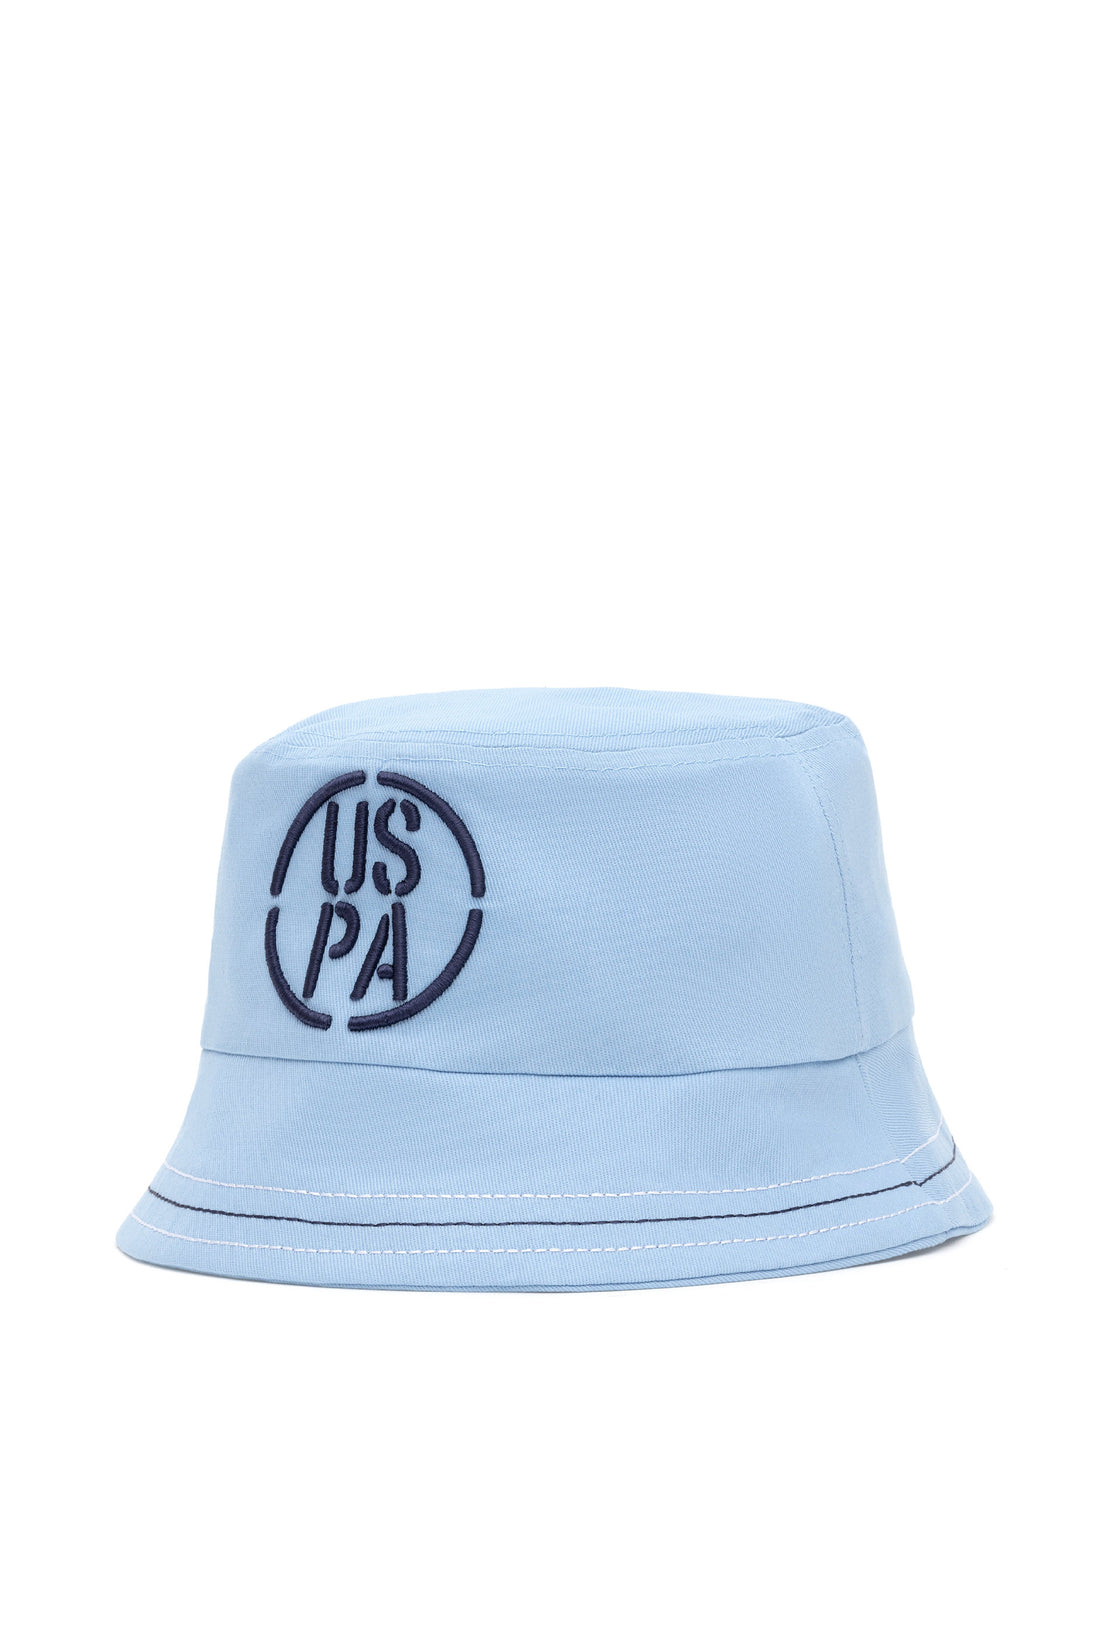 Blue Bucket Hat With Logo_A081SZ064P01 YORU_VR028_02